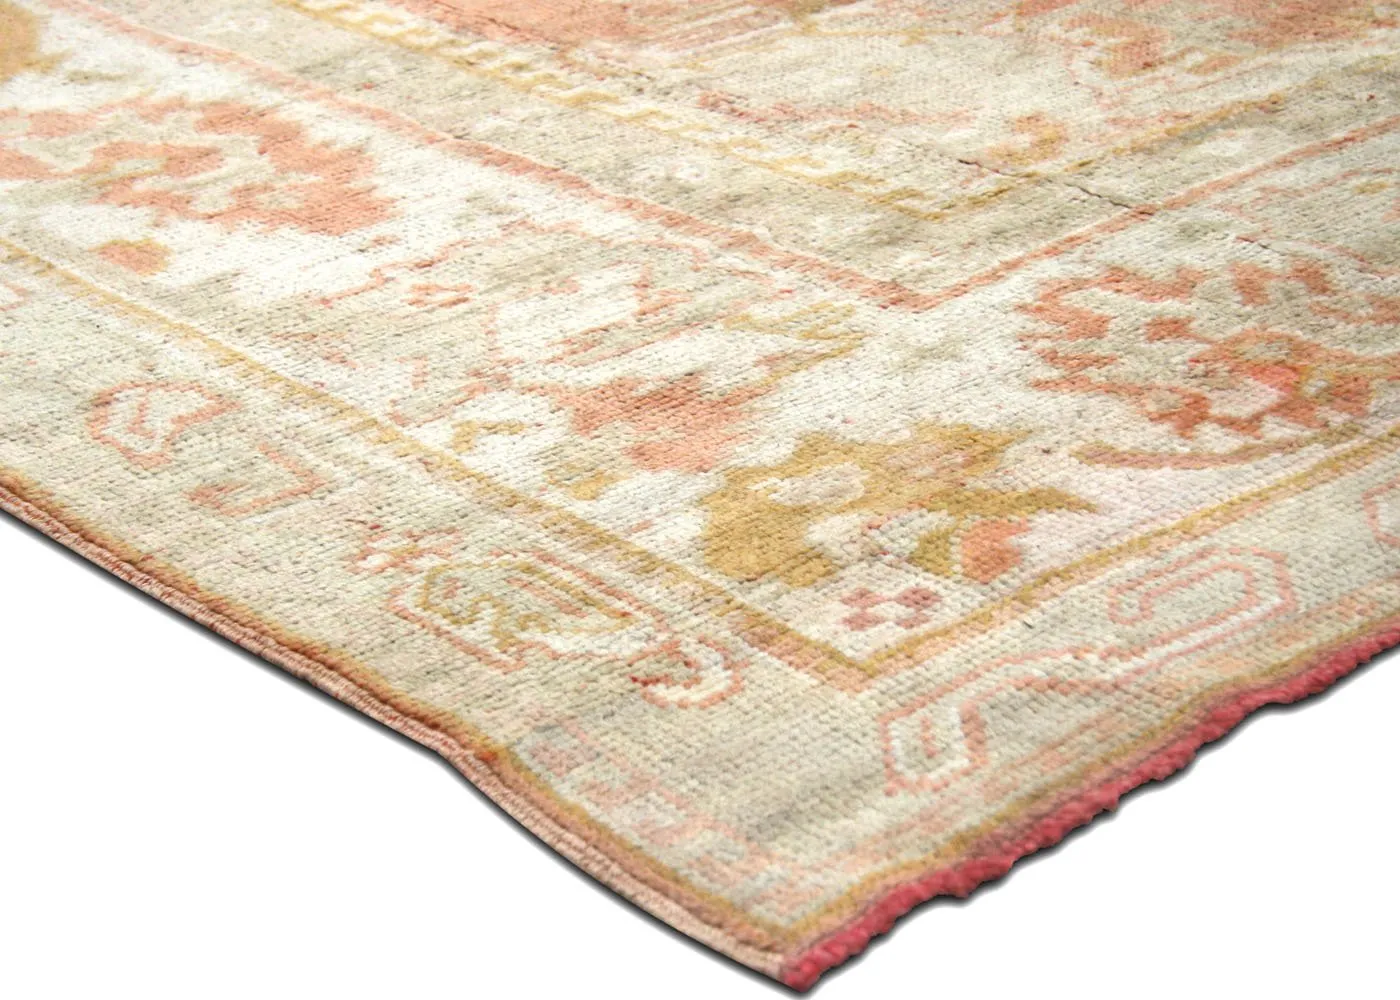 1920s Turkish Oushak Carpet - 9'2" x12'6" - Nalbandian - Orange